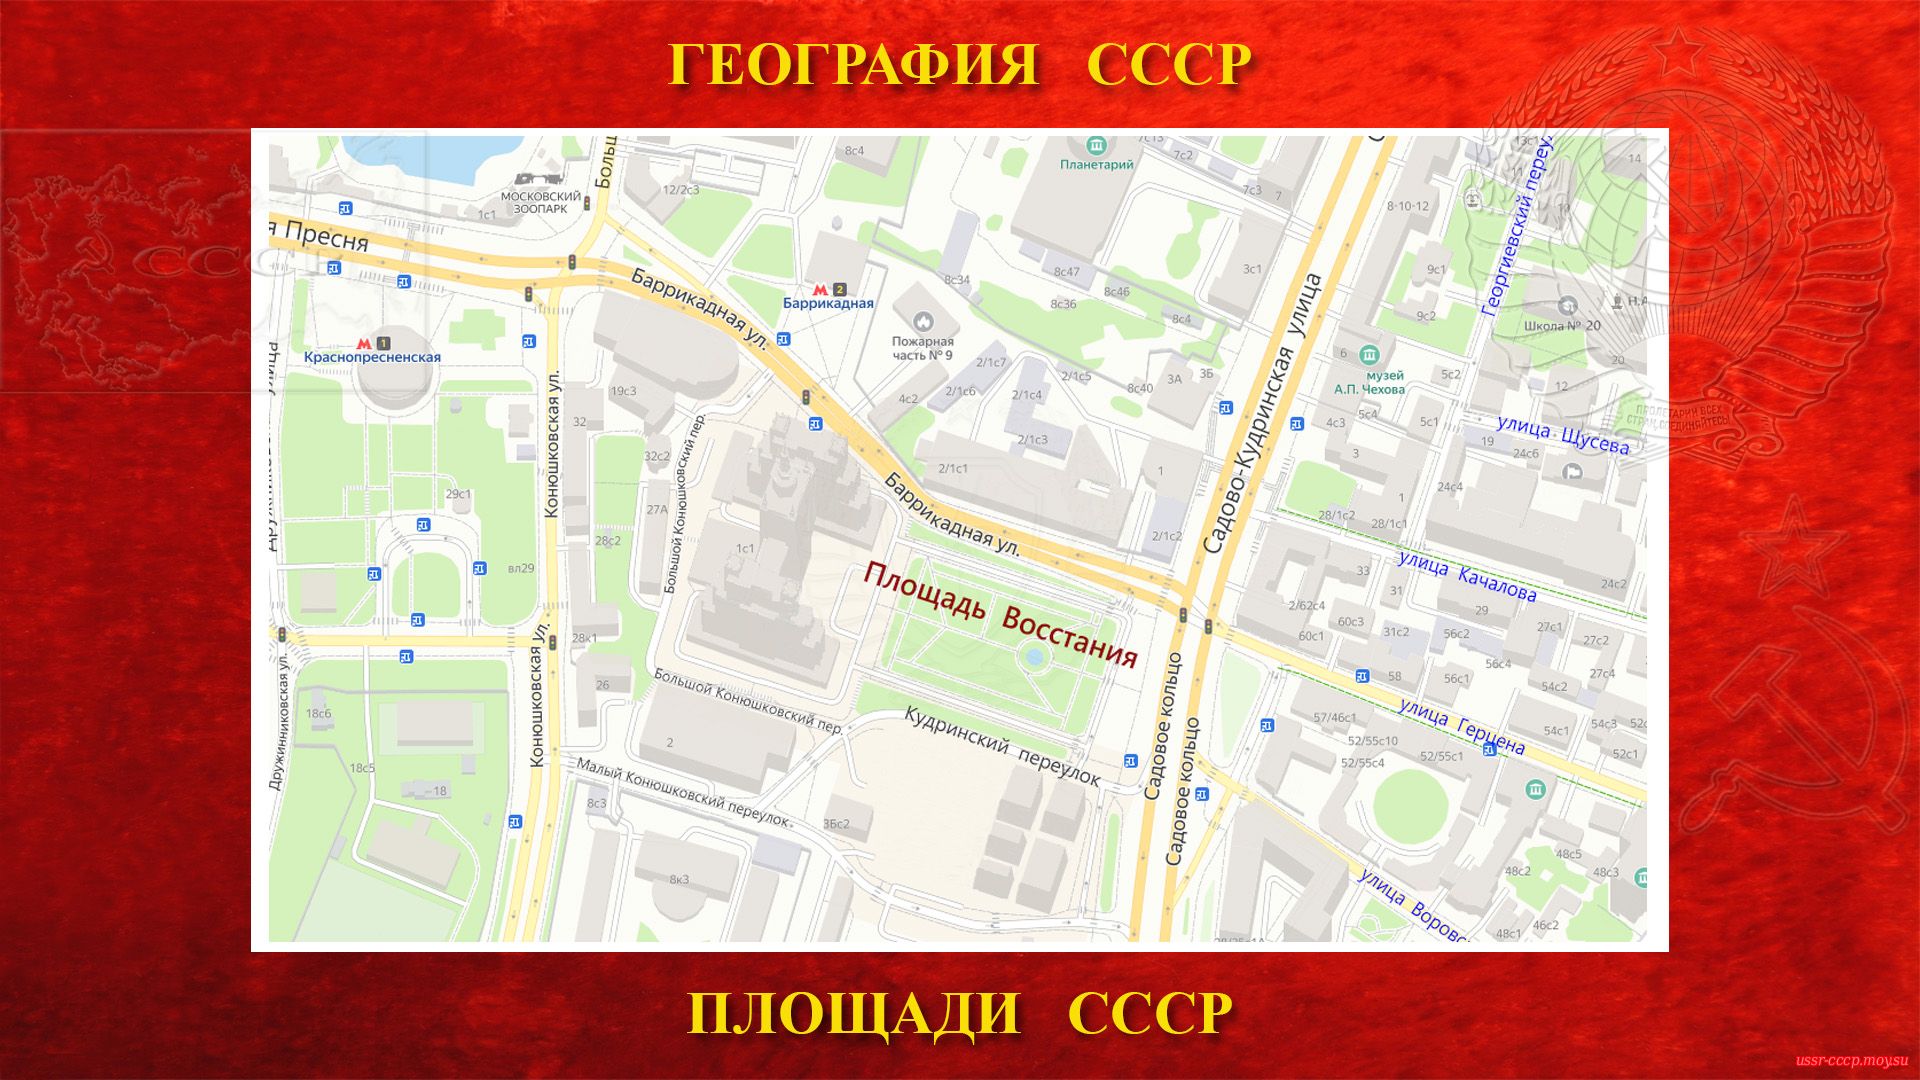 Площадь Восстания — Площадь в центре Москвы (повествование)